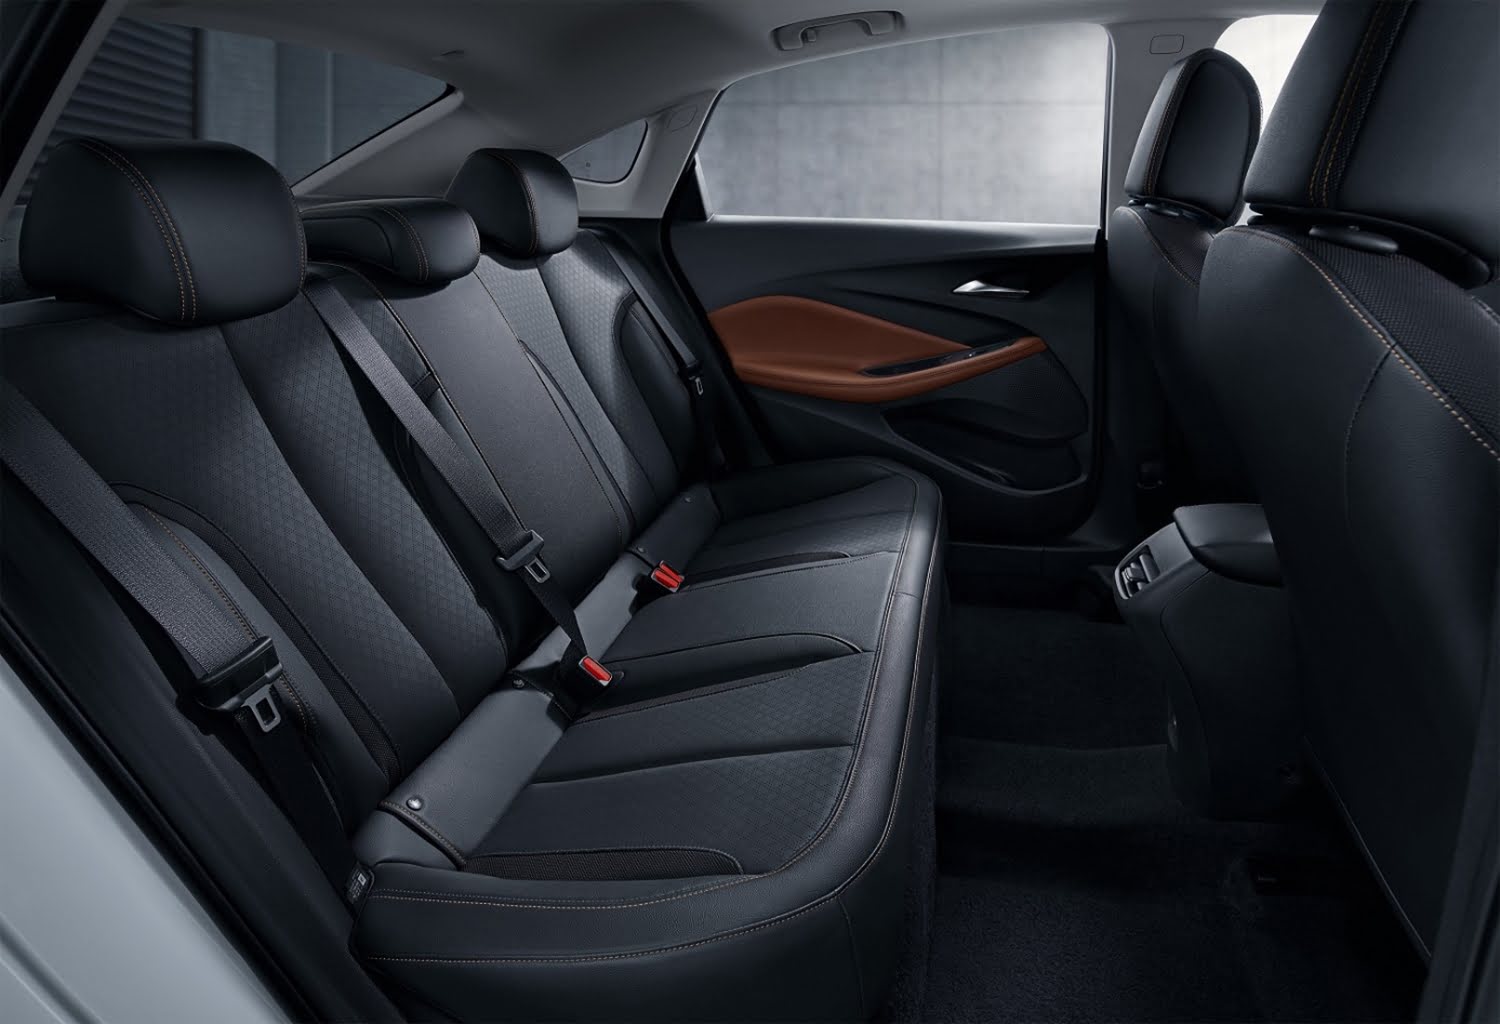 The All-New 2022 Buick Verano Pro's Interior Design Revealed